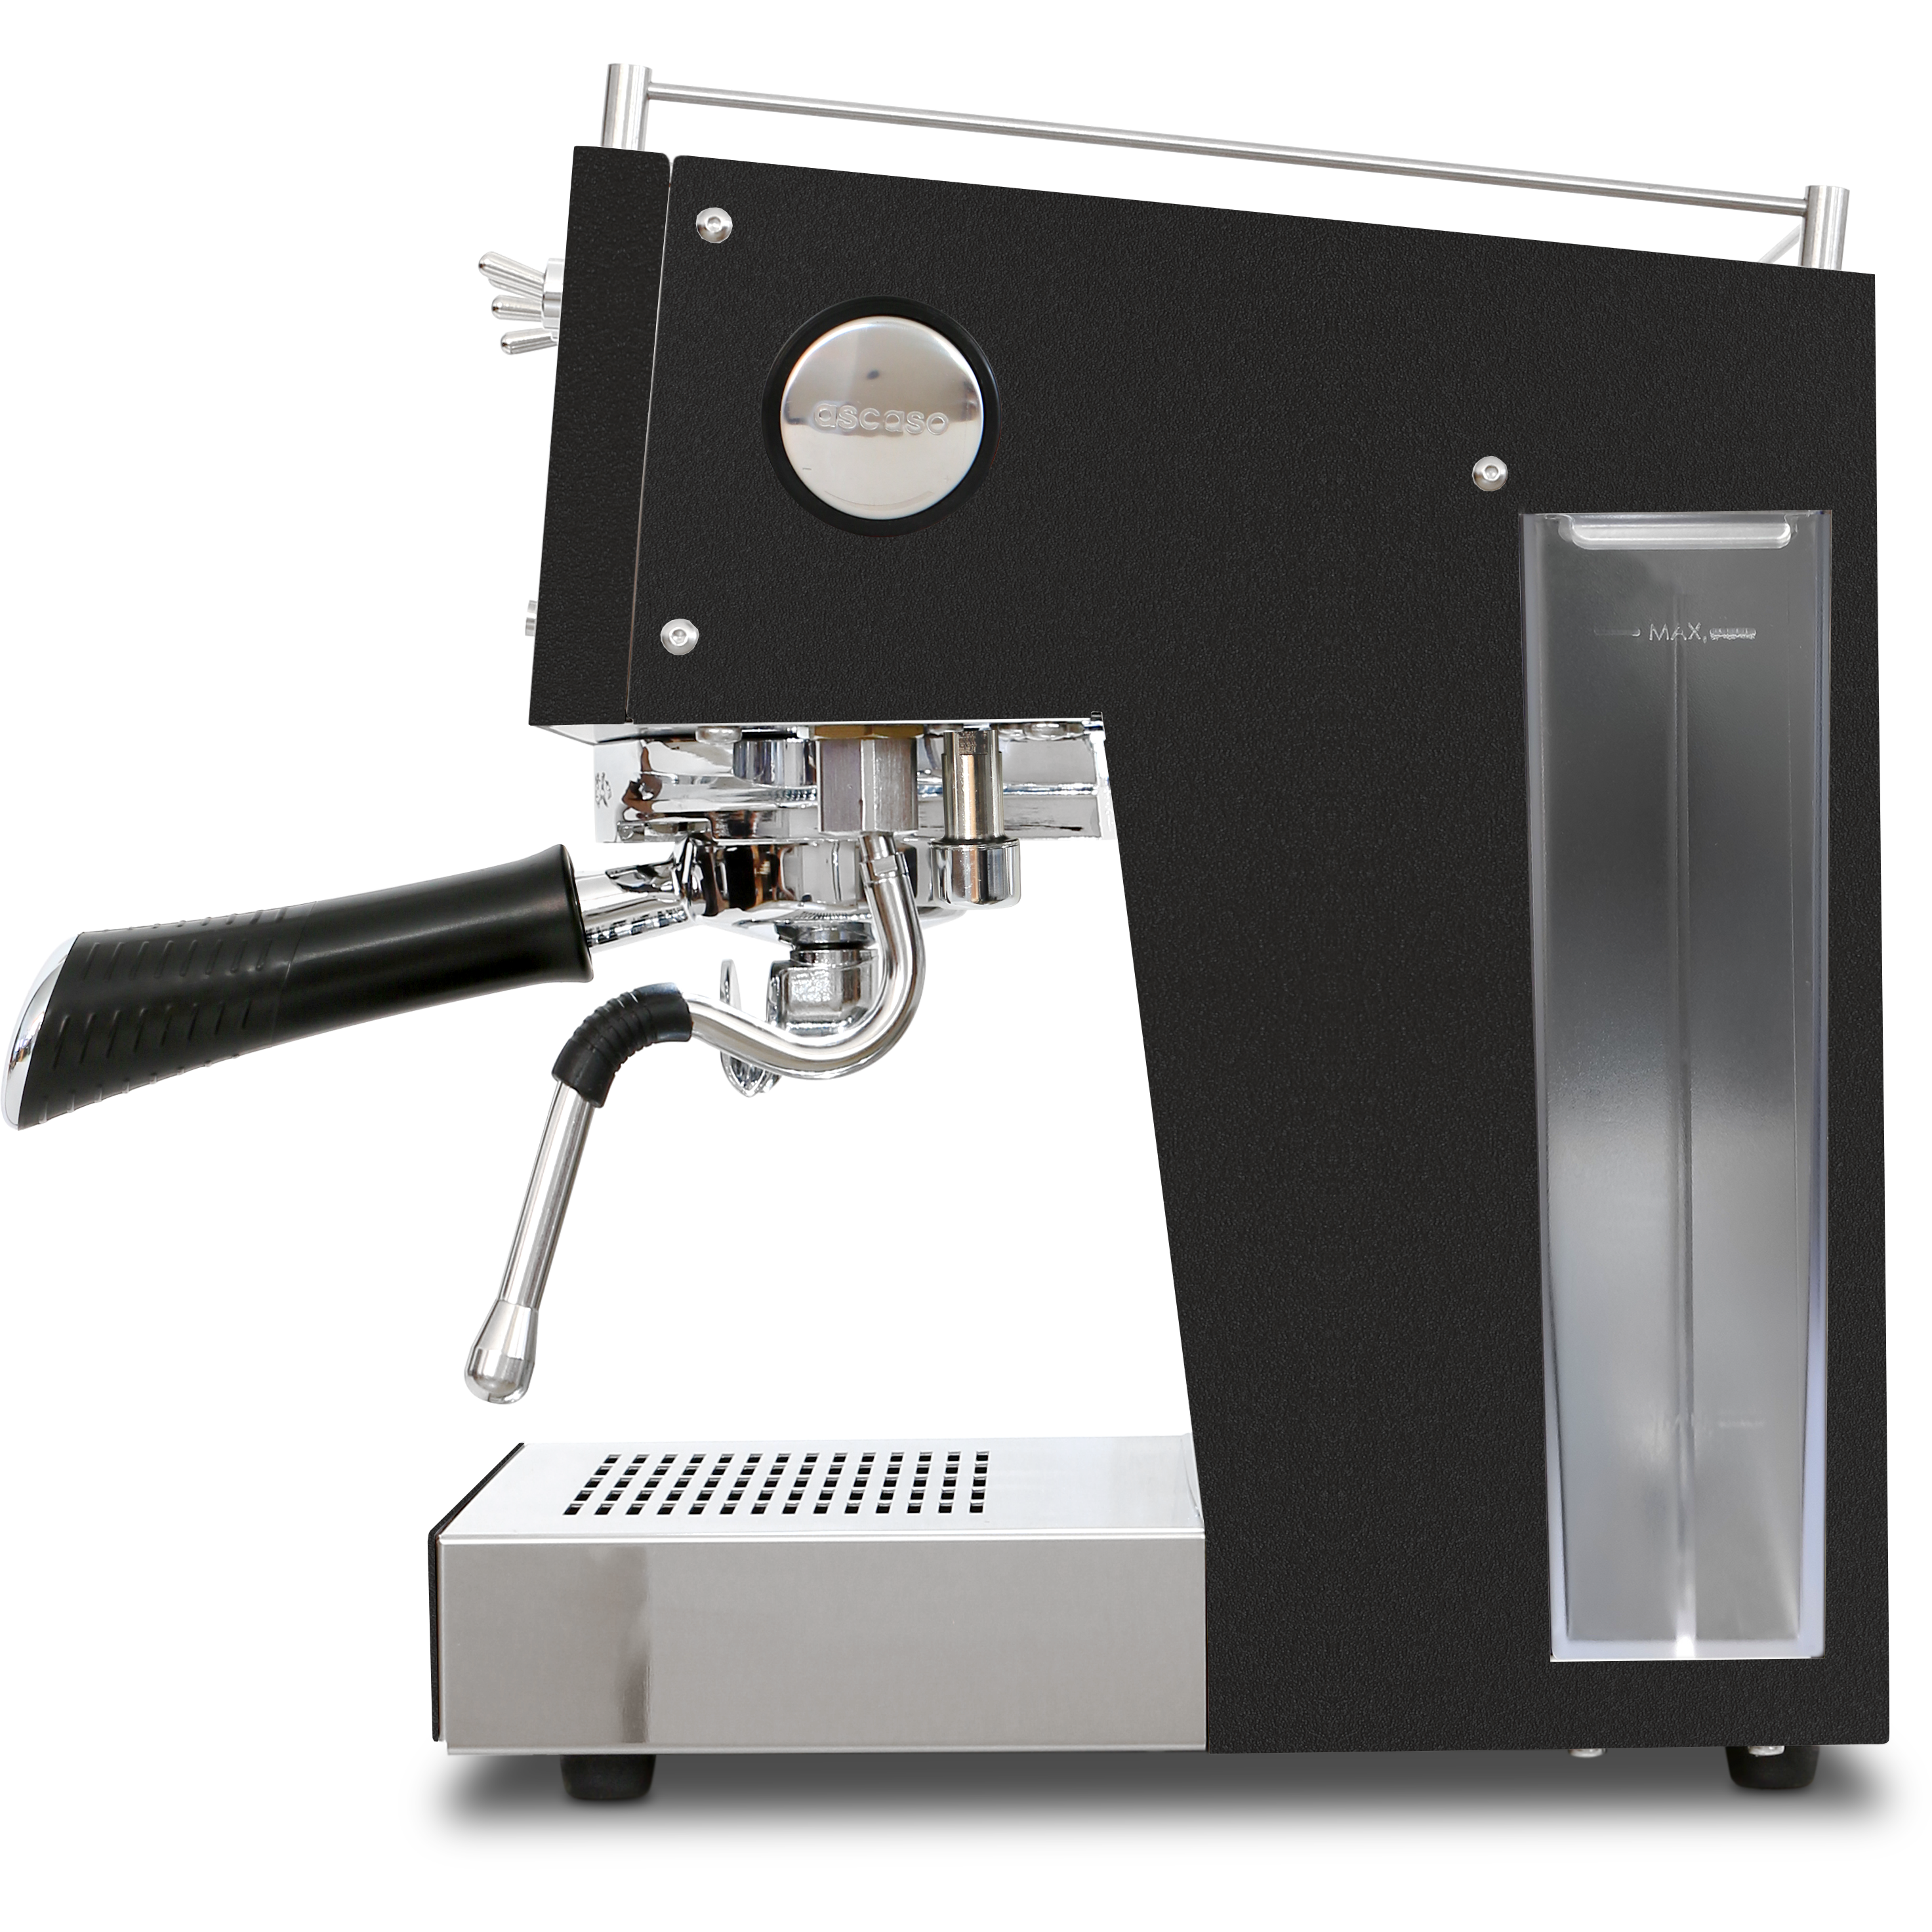 Ascaso Steel Duo Black - Modell 2022 mit 25% mehr Dampfpower Espressomaschinen Ascaso    - Rheinland.Coffee